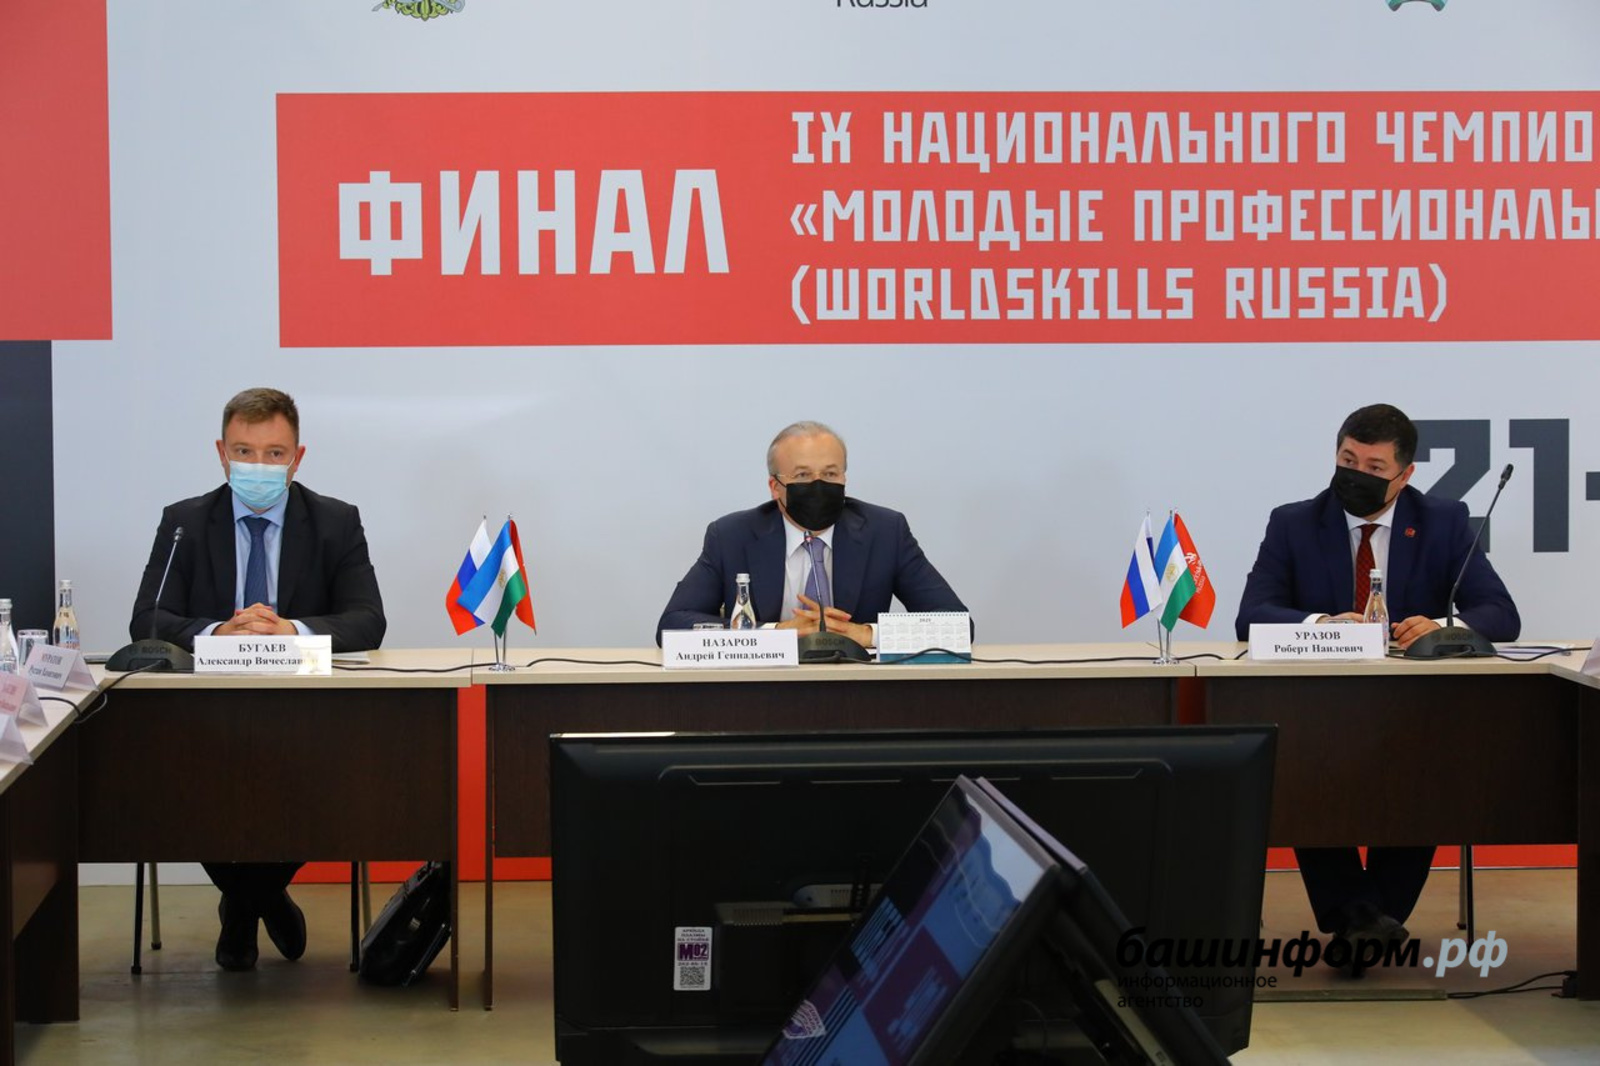 Решение о проведении чемпионата Worldskills в Башкирии за федеральным комитетом - Назаров